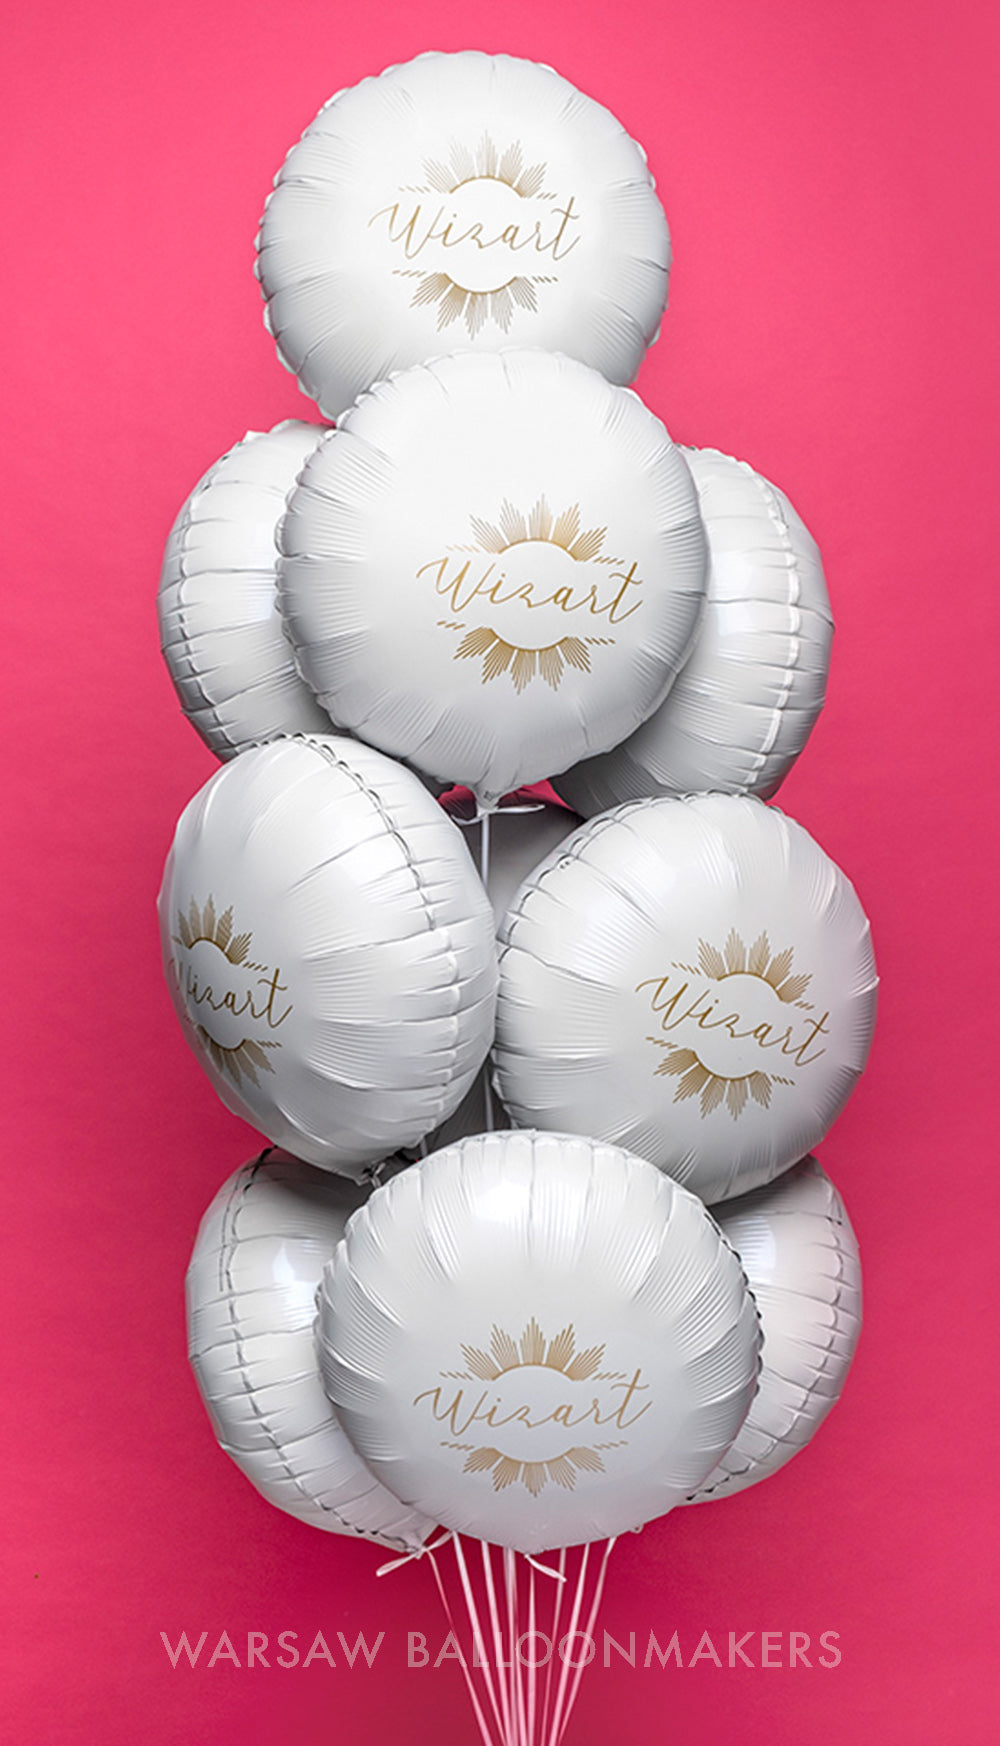 Białe balony foliowe ze złotym nadrukiem od Warsaw balloonmakers wypełnione helem dla Wizart